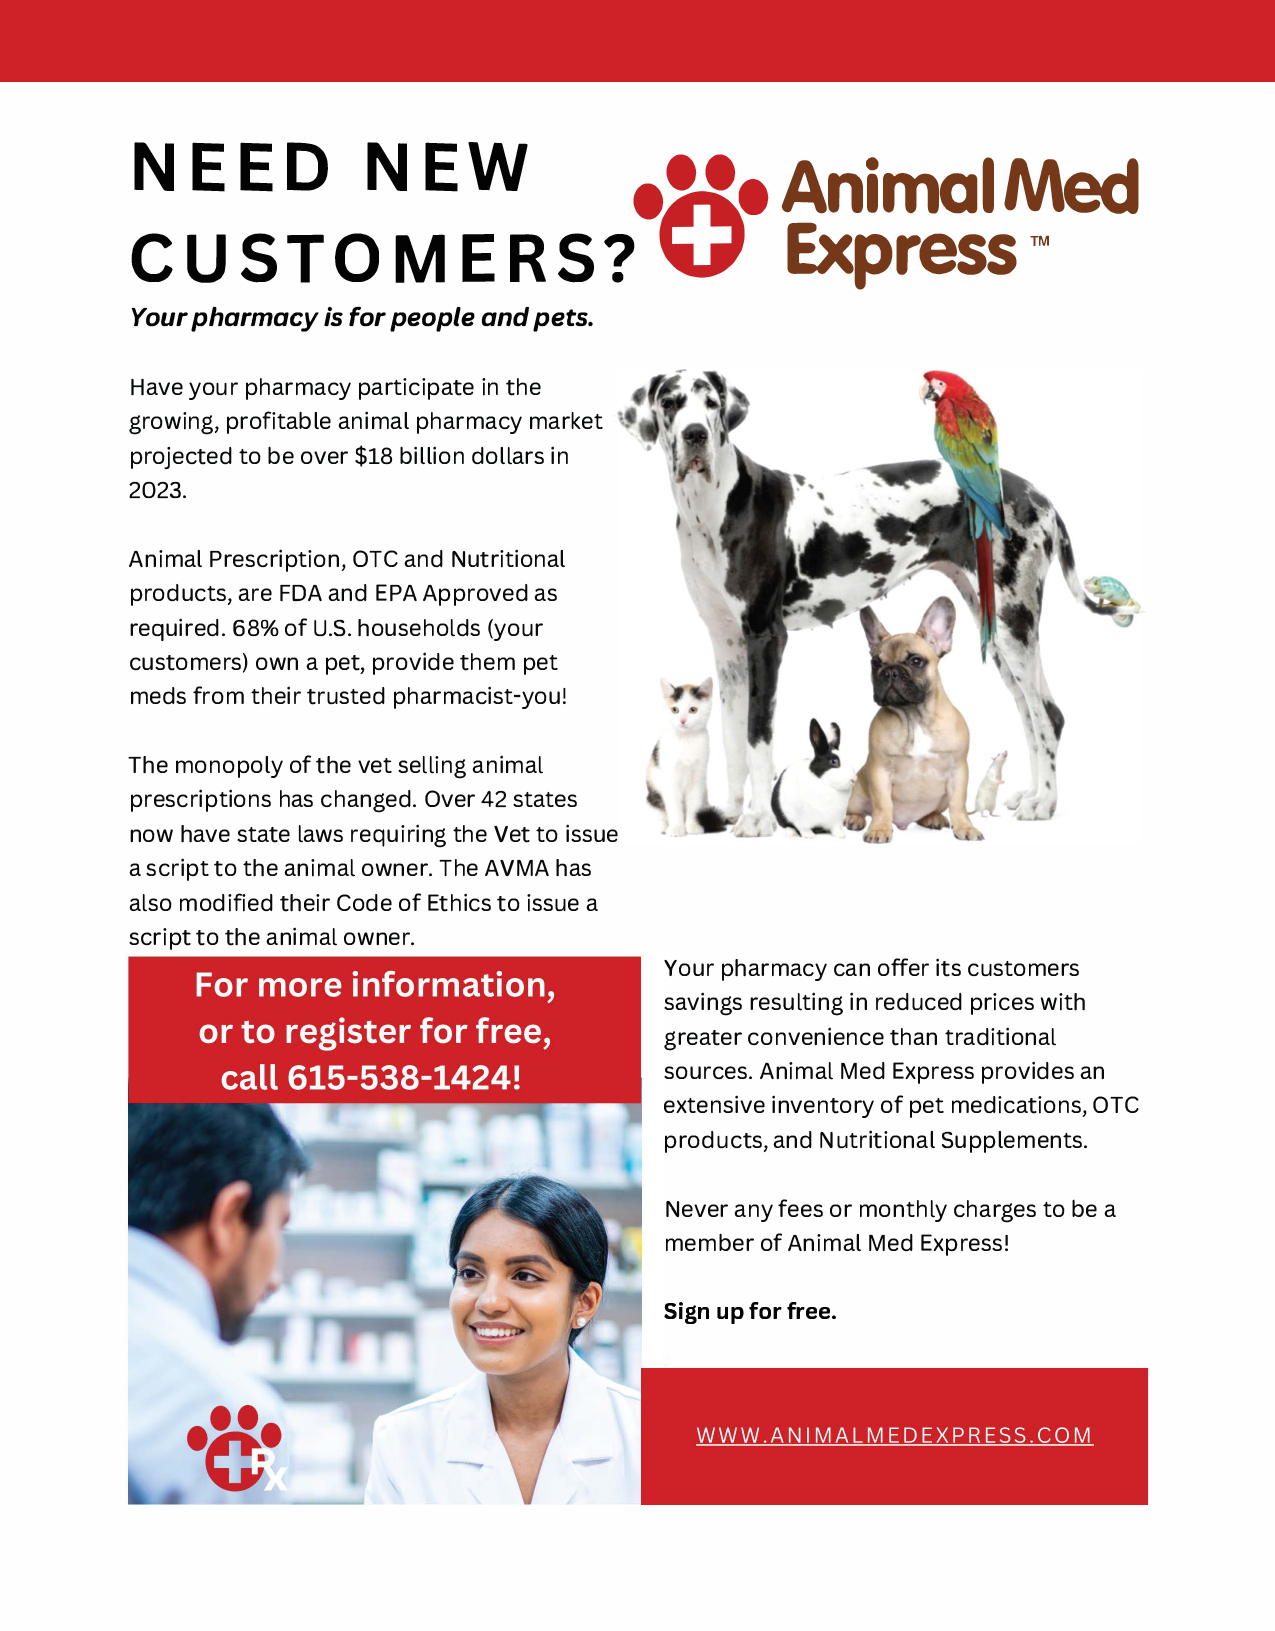 Animal Med Express